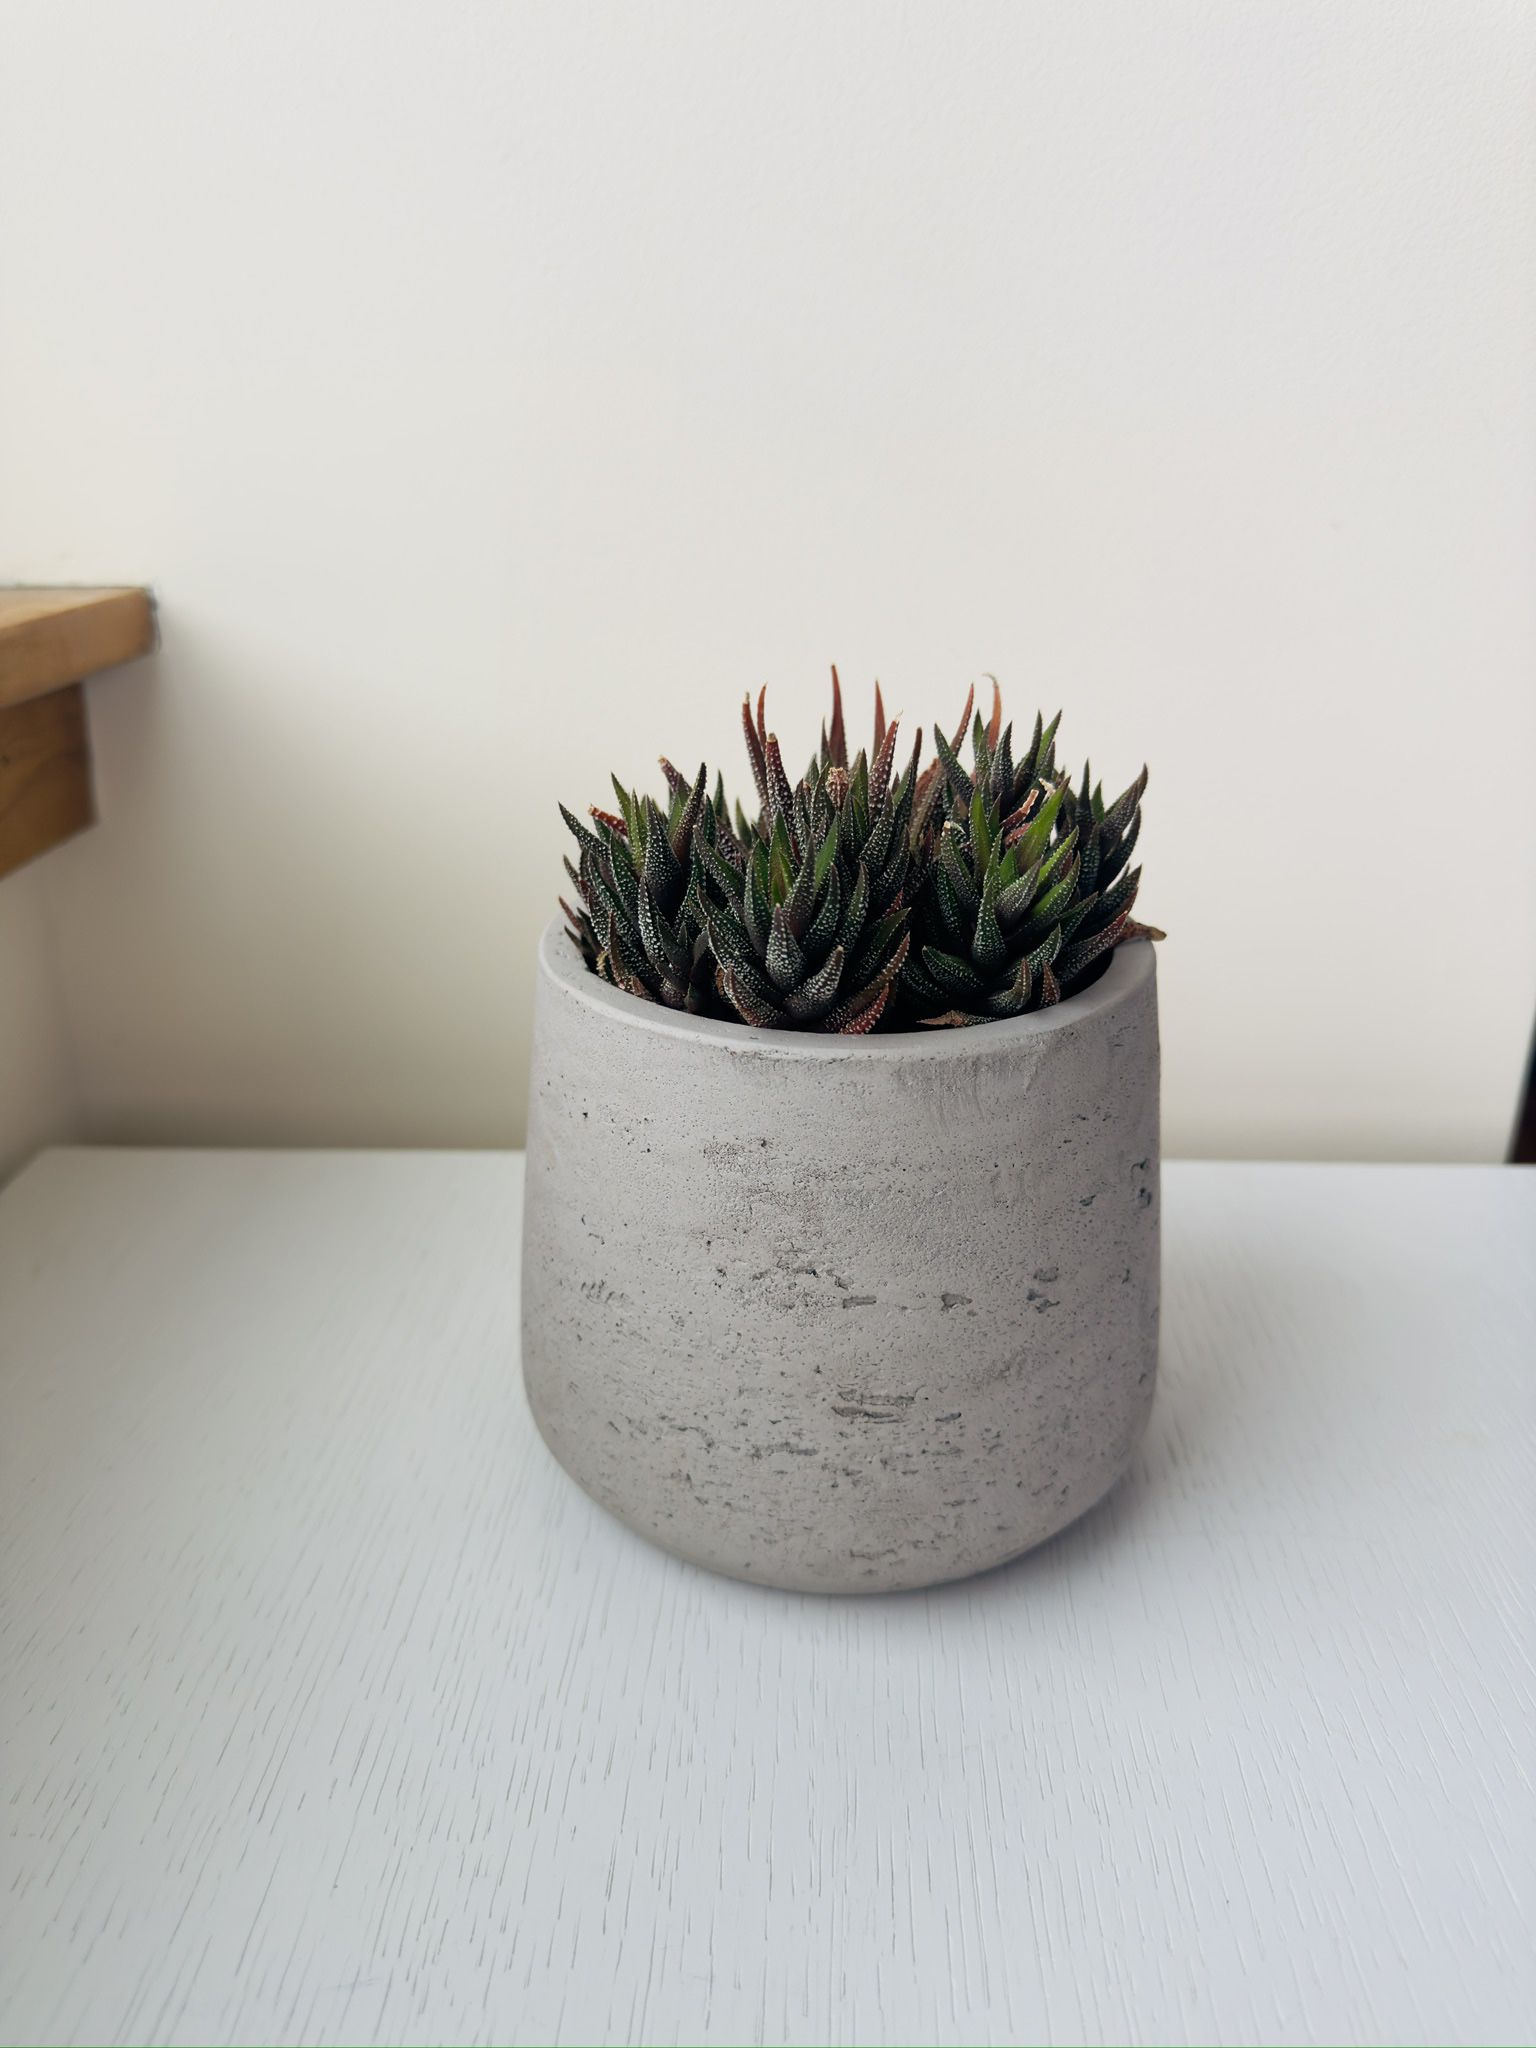 Succulent Plant - with a cement pot